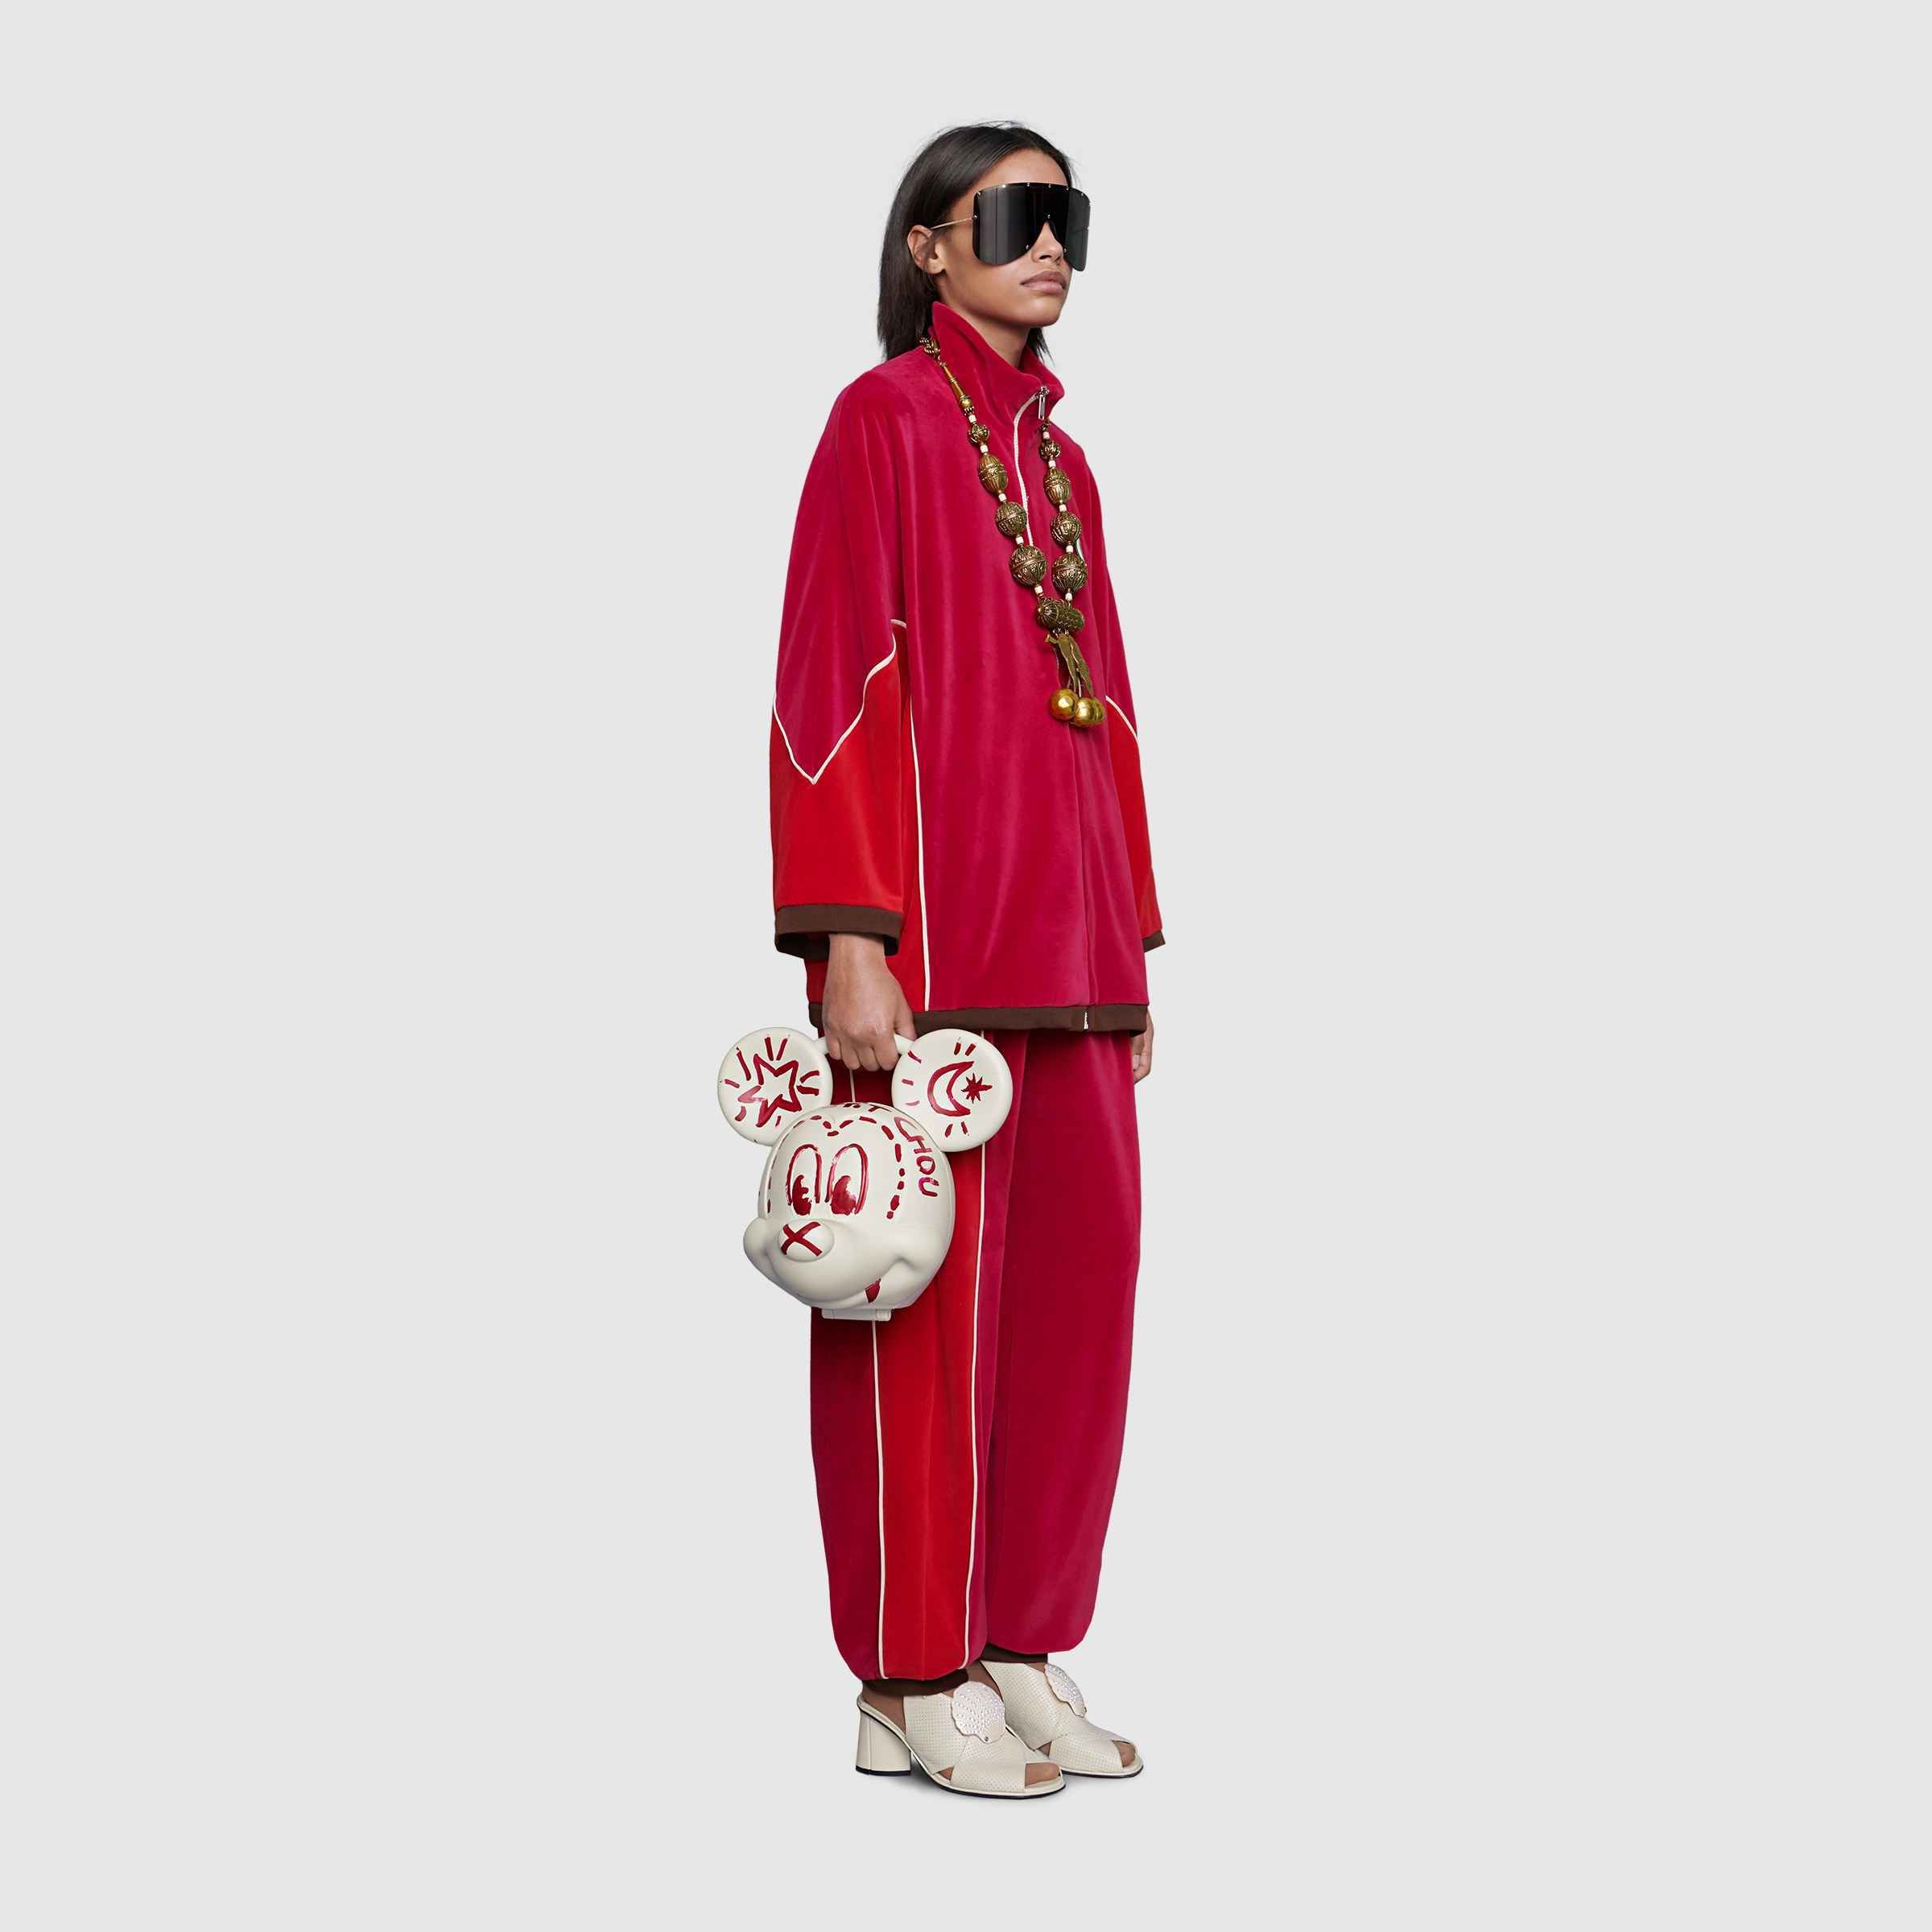 Gucci predstavilo bizarnú kabelku v tvare 3D hlavy Mickey Mousa, za ktorú si pýta 4 000 €